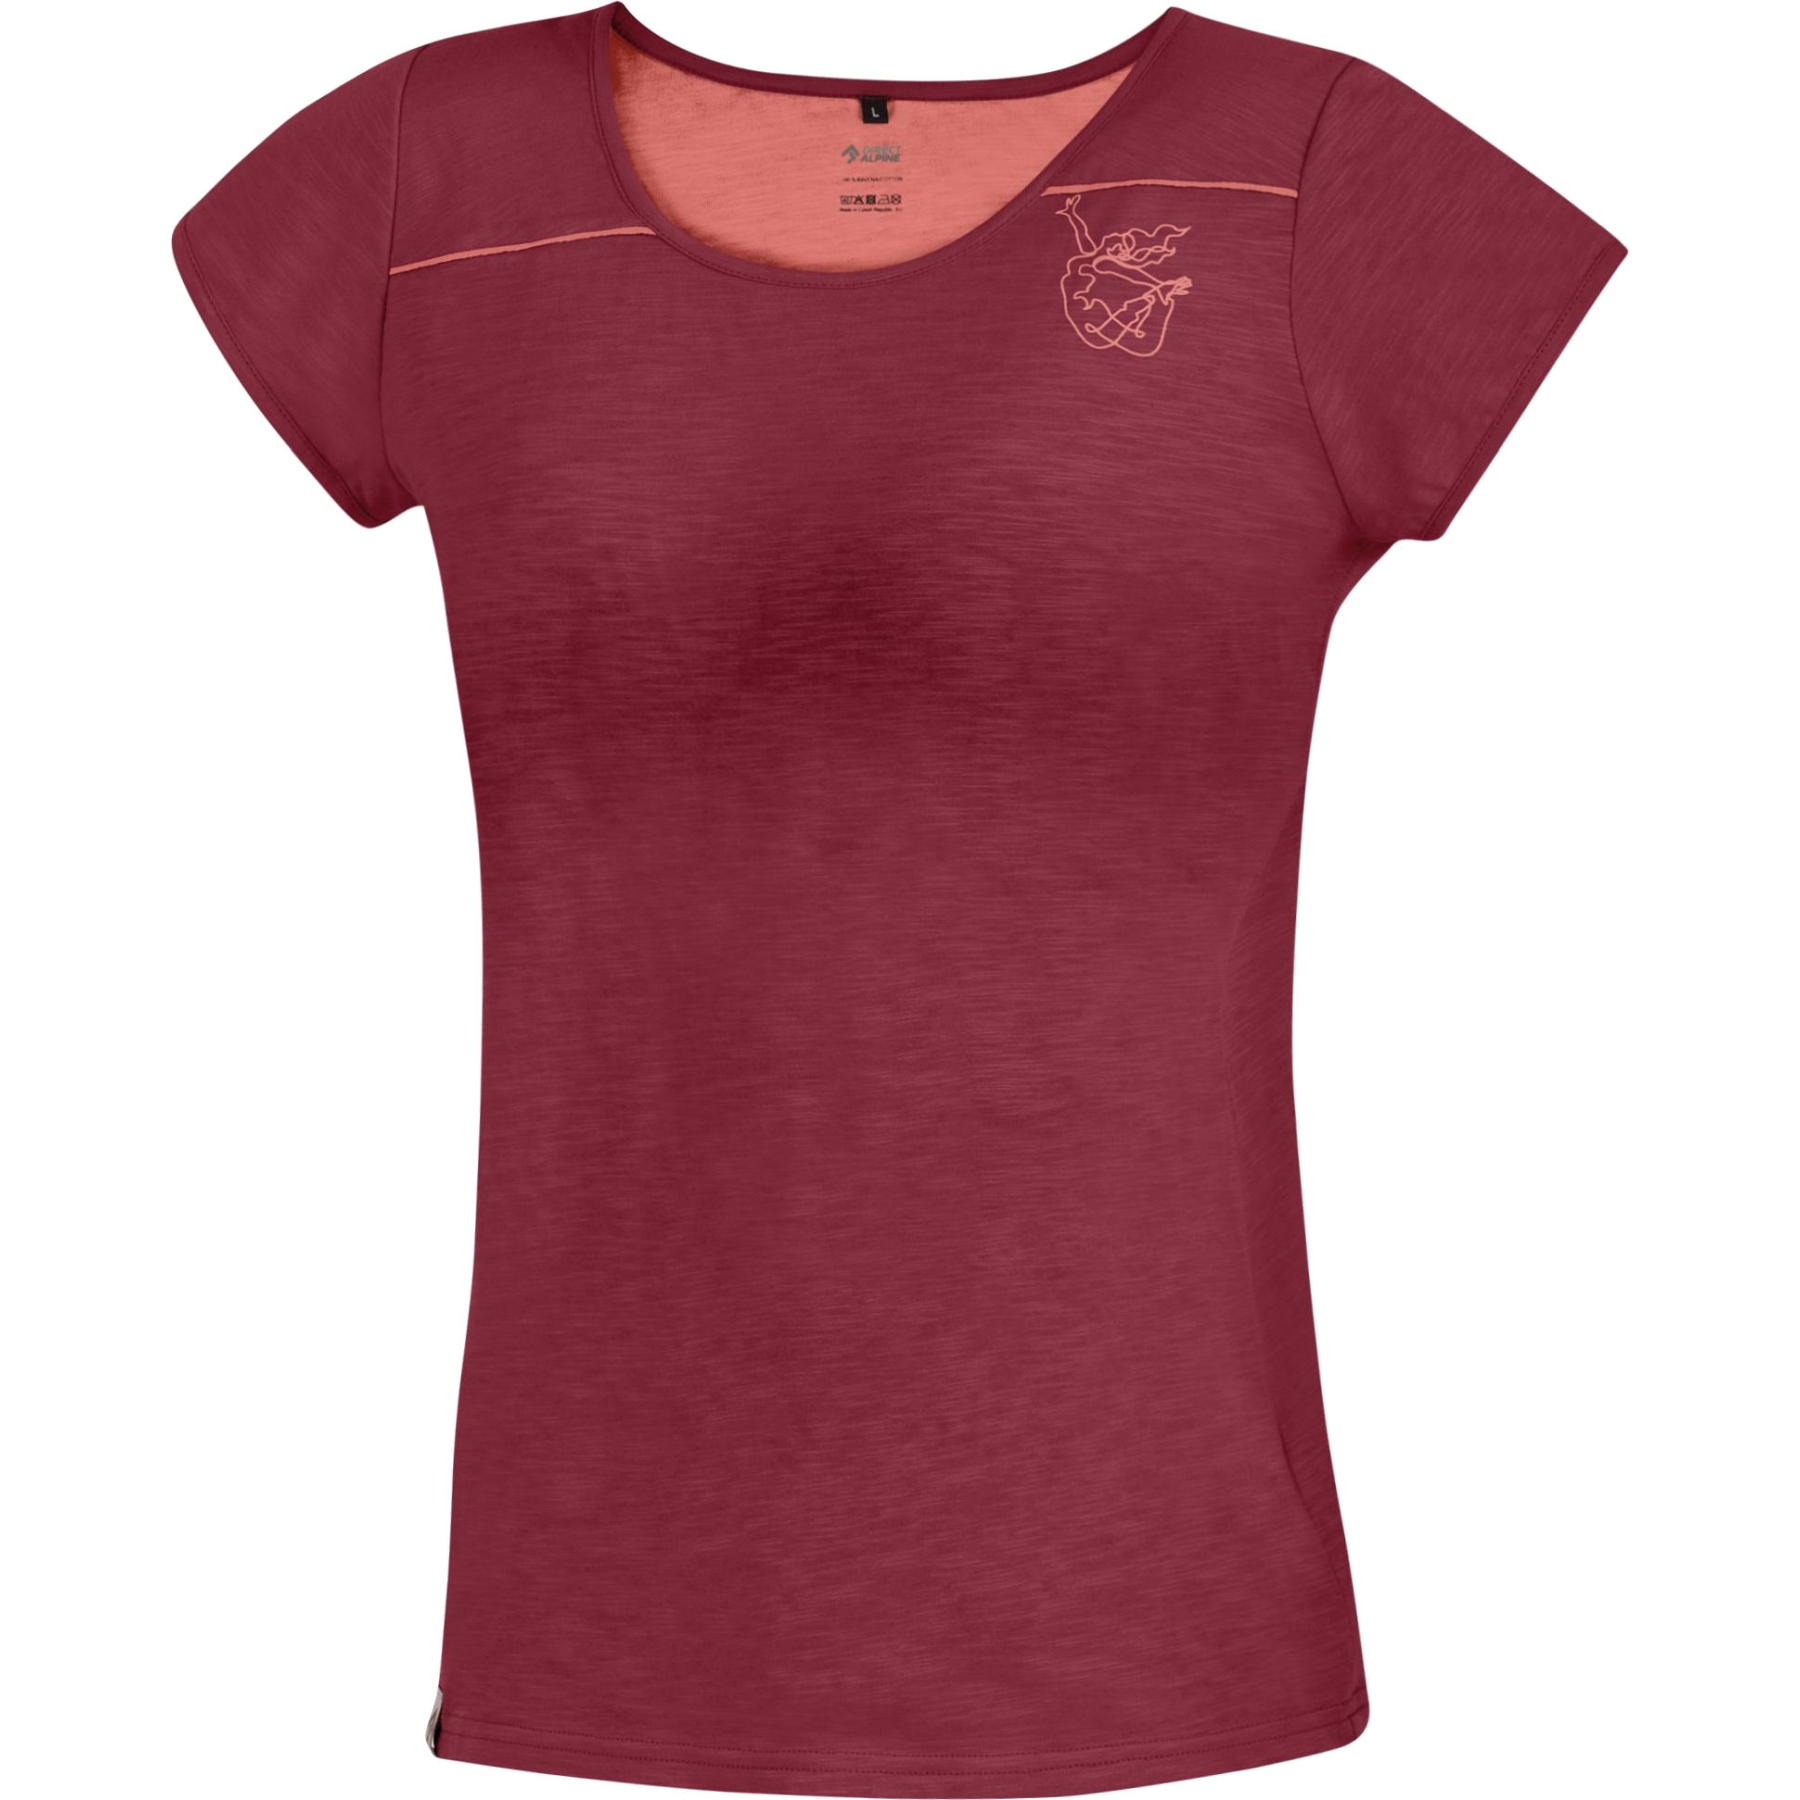 Produktbild von Directalpine Yoga Free Lady Damen T-Shirt - palisander